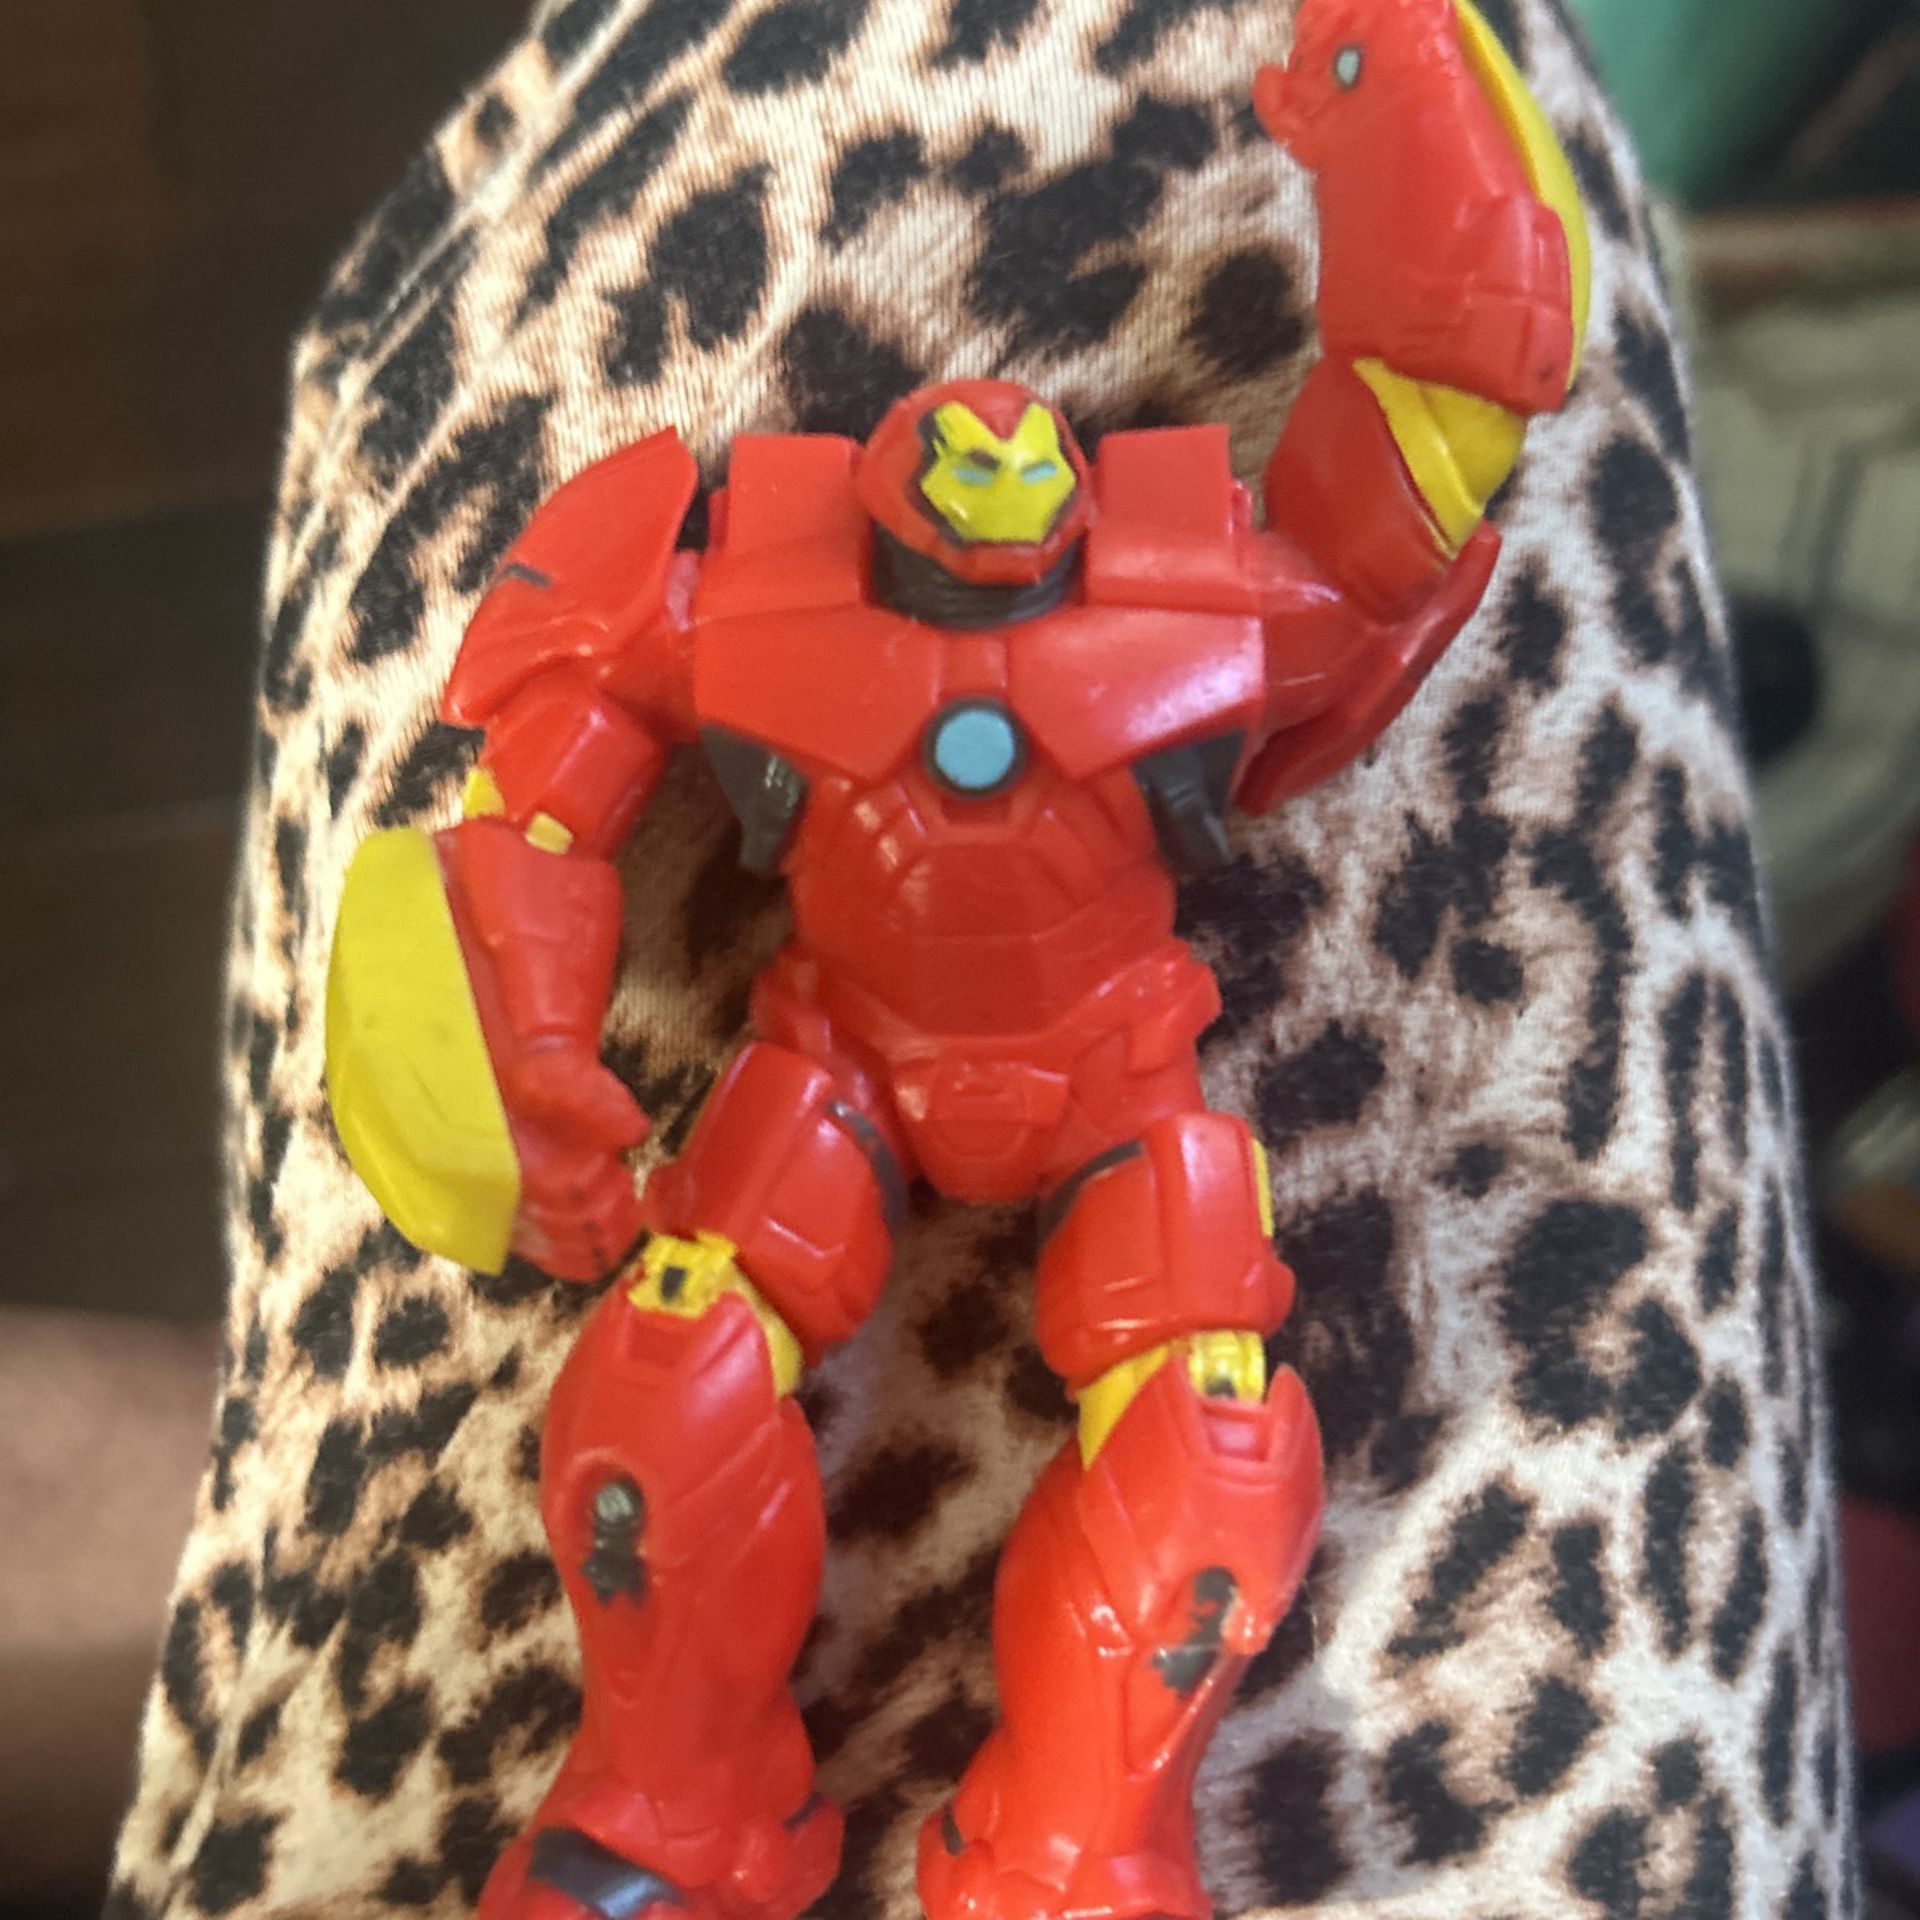 Iron Man Marvel Action Figure